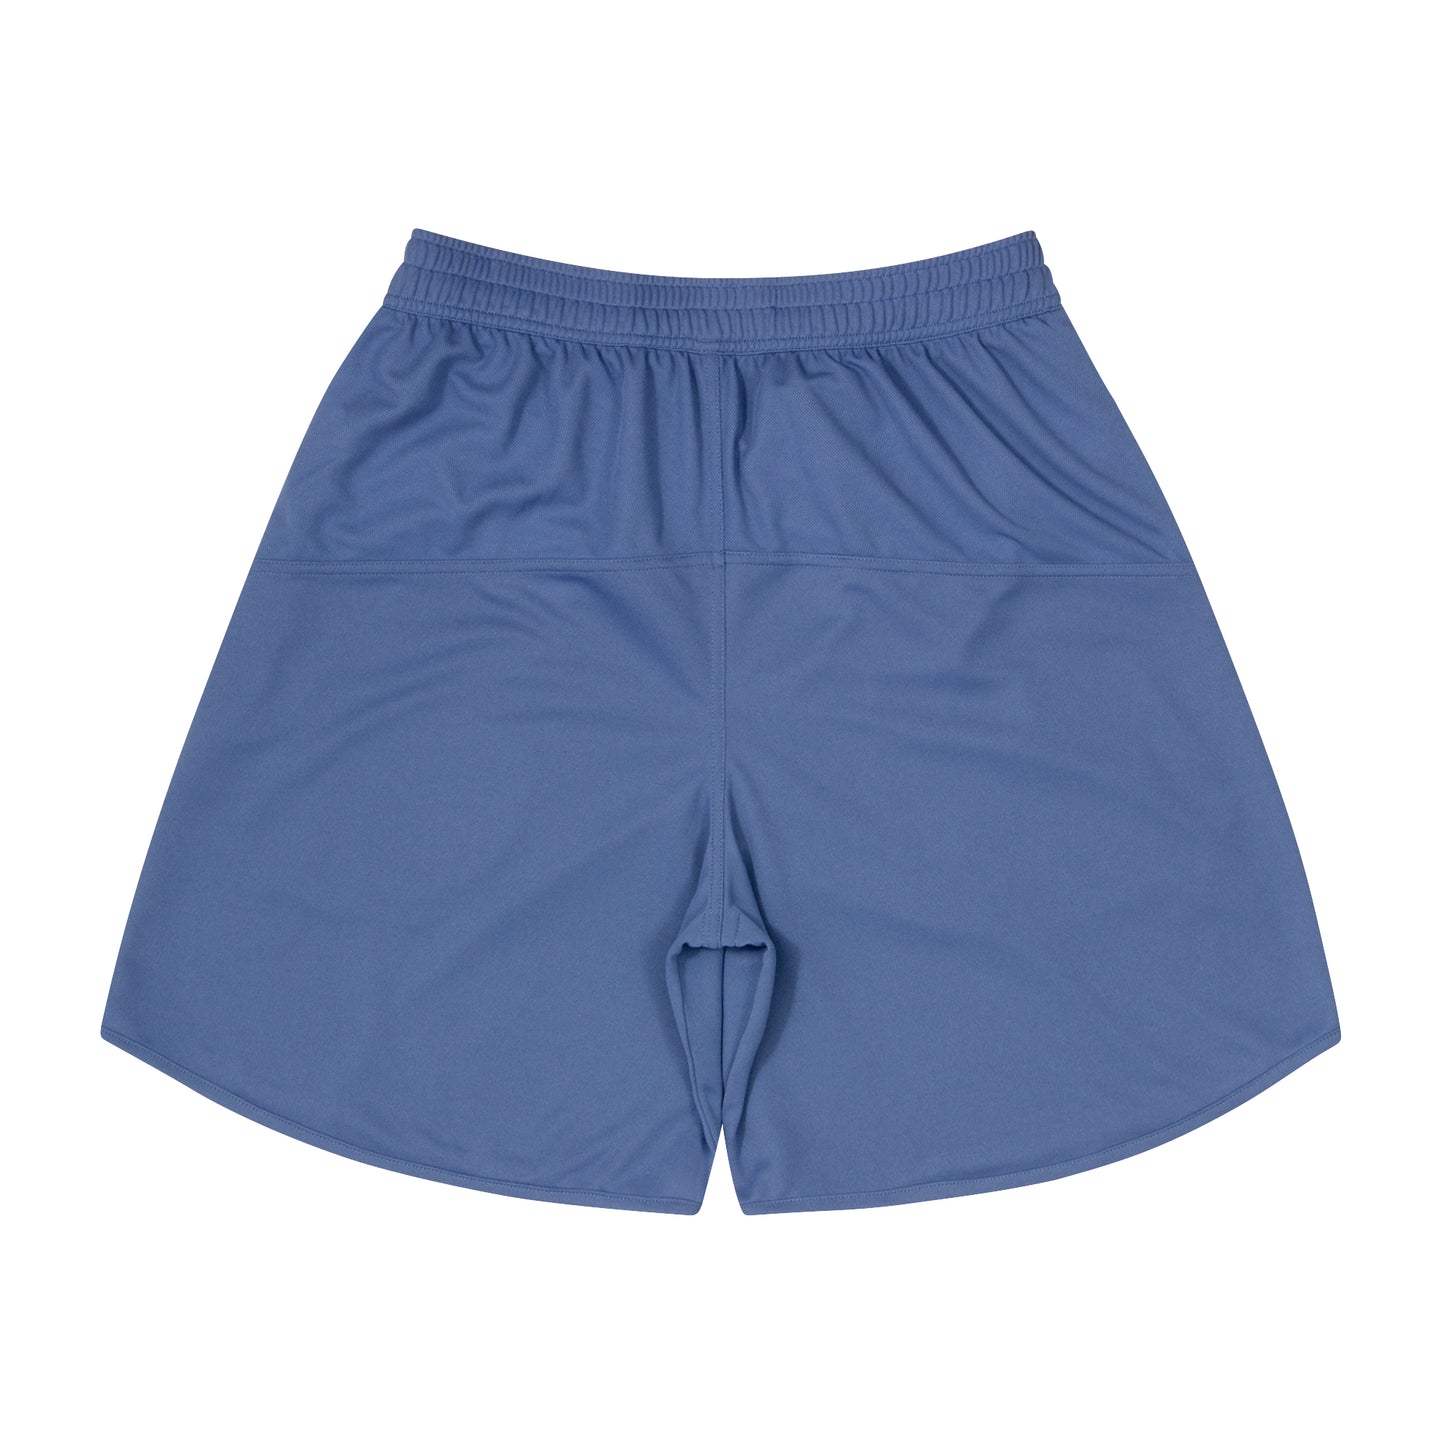 Basic Zip Shorts (classic blue/off white)